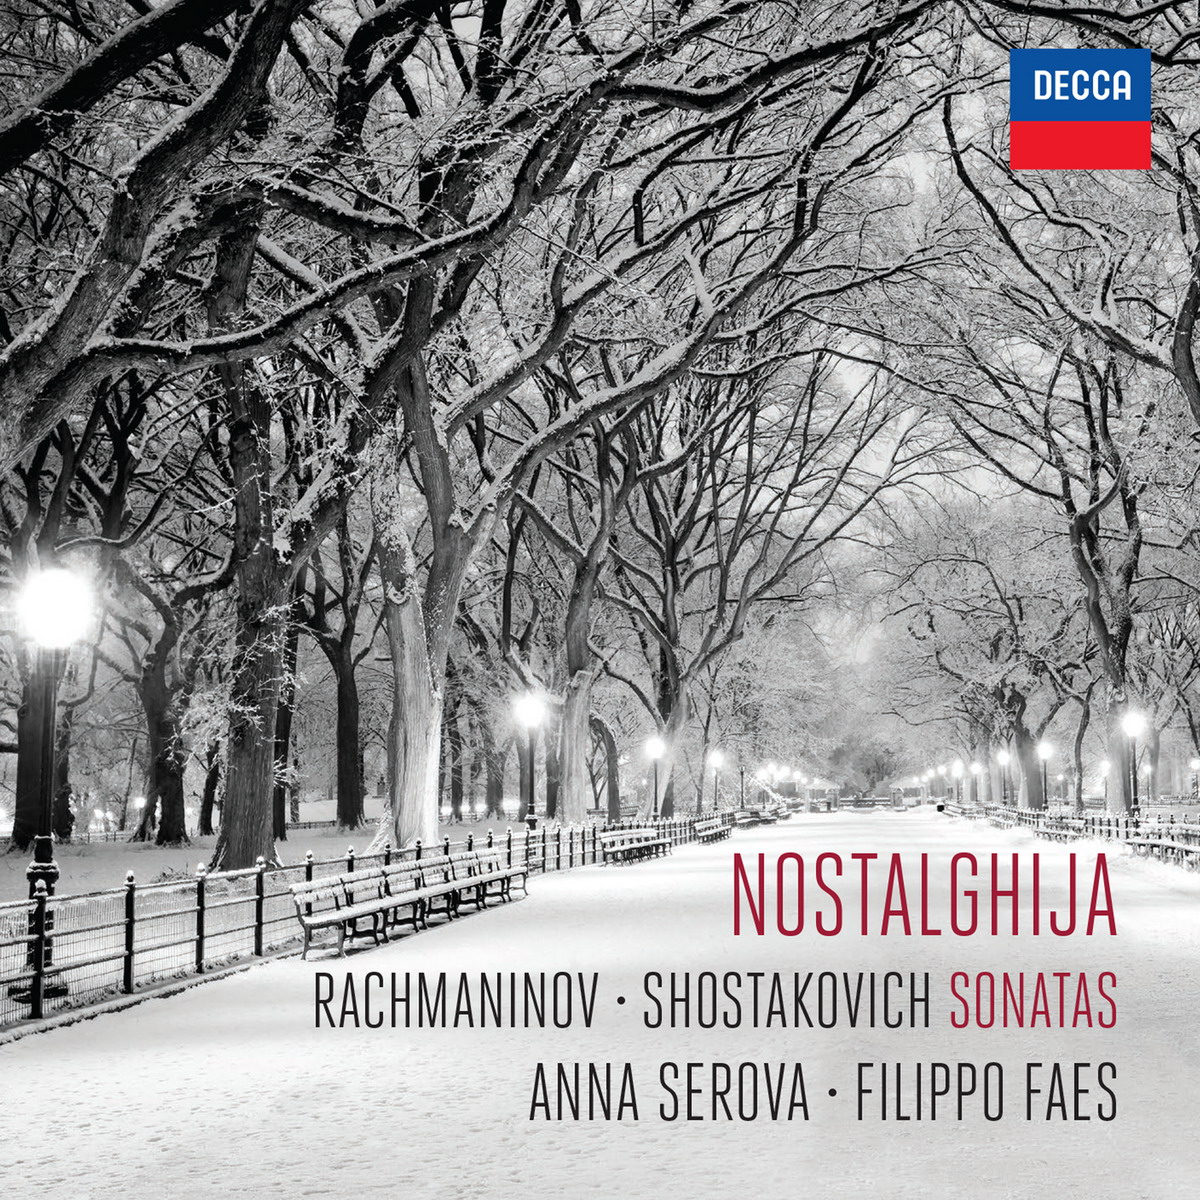 Anna Serova & Filippo Faes - Nostalghija (2015) [Qobuz FLAC 24bit/96kHz]